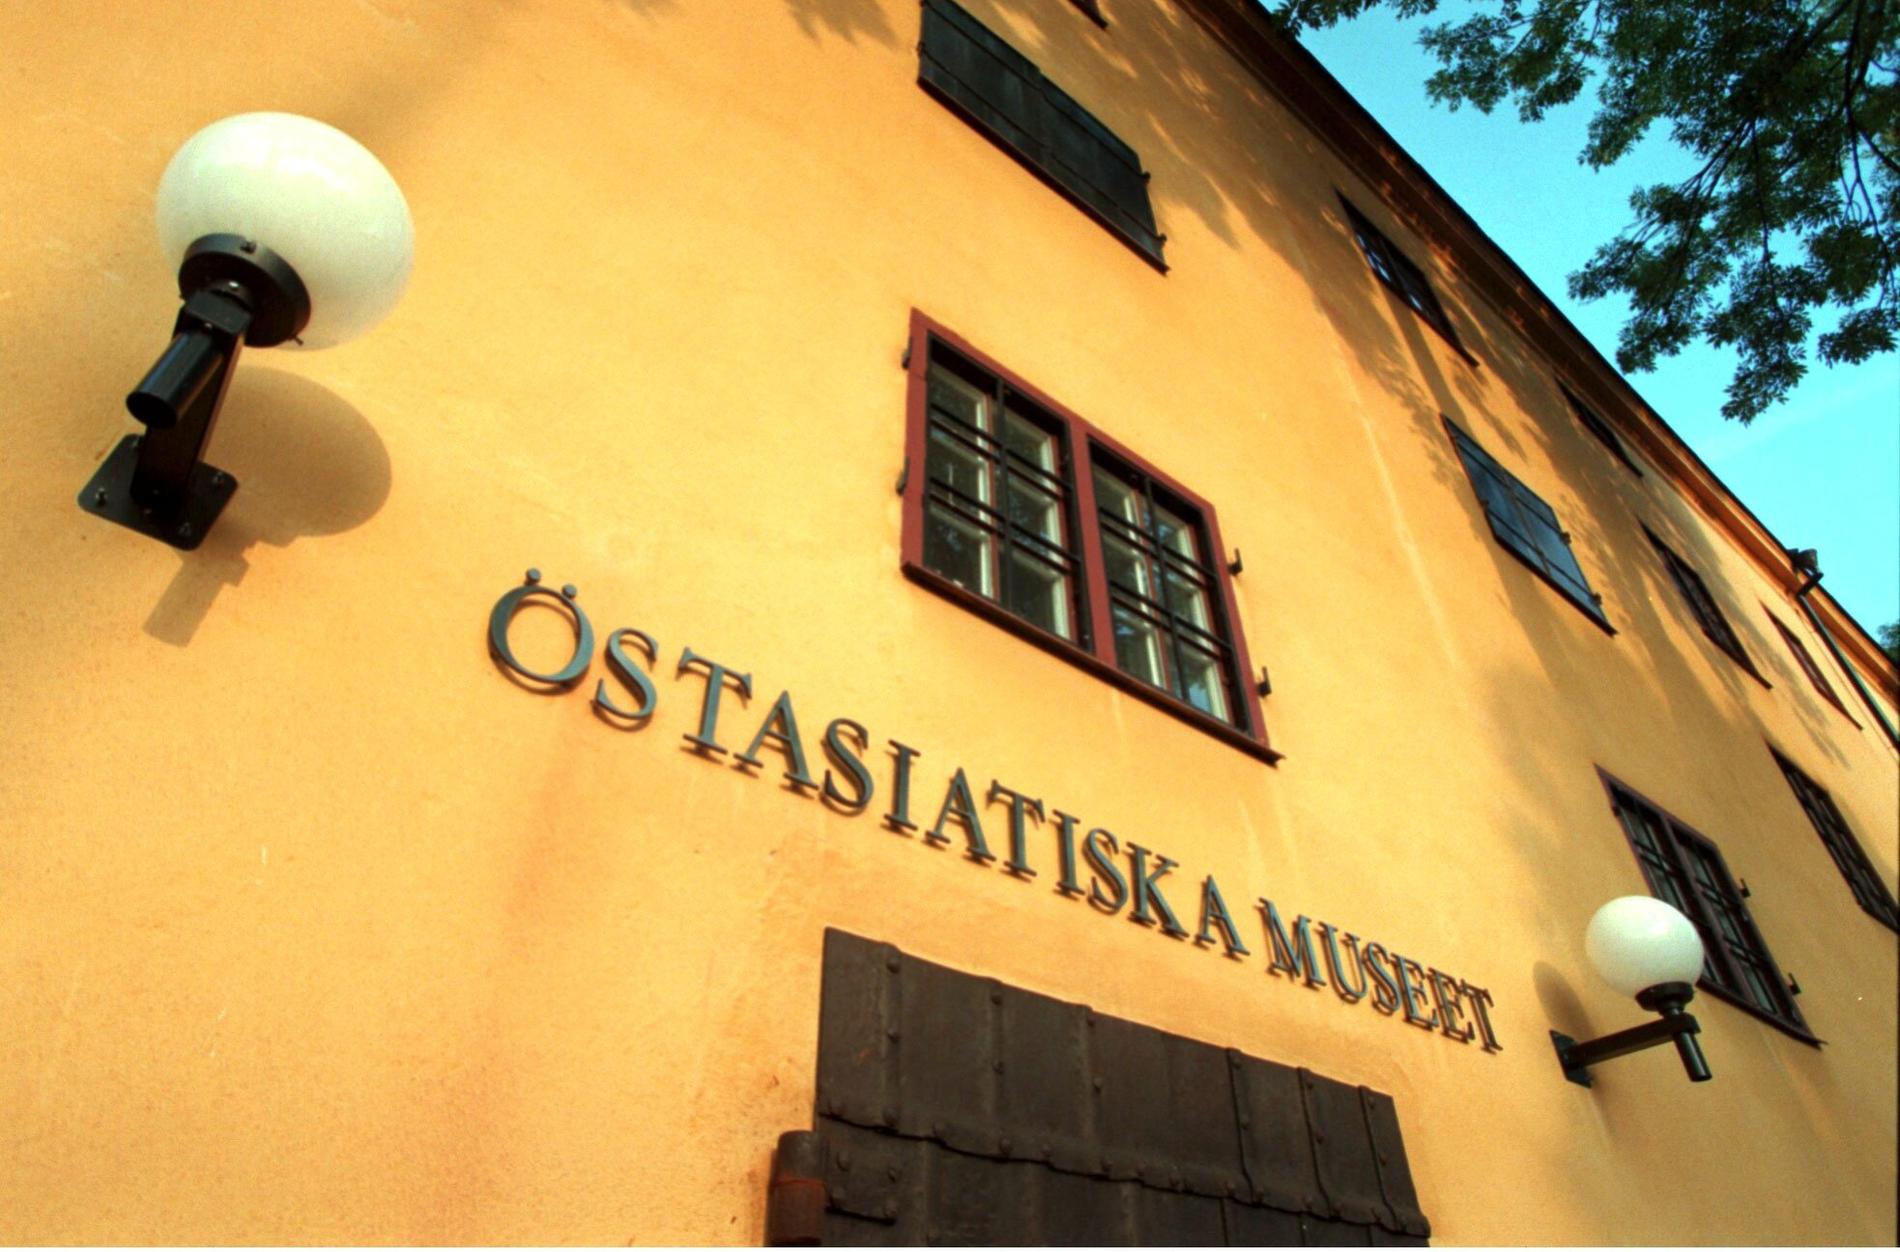 Östasiatiska museet på Skeppsholmen i Stockholm. Arkivbild.